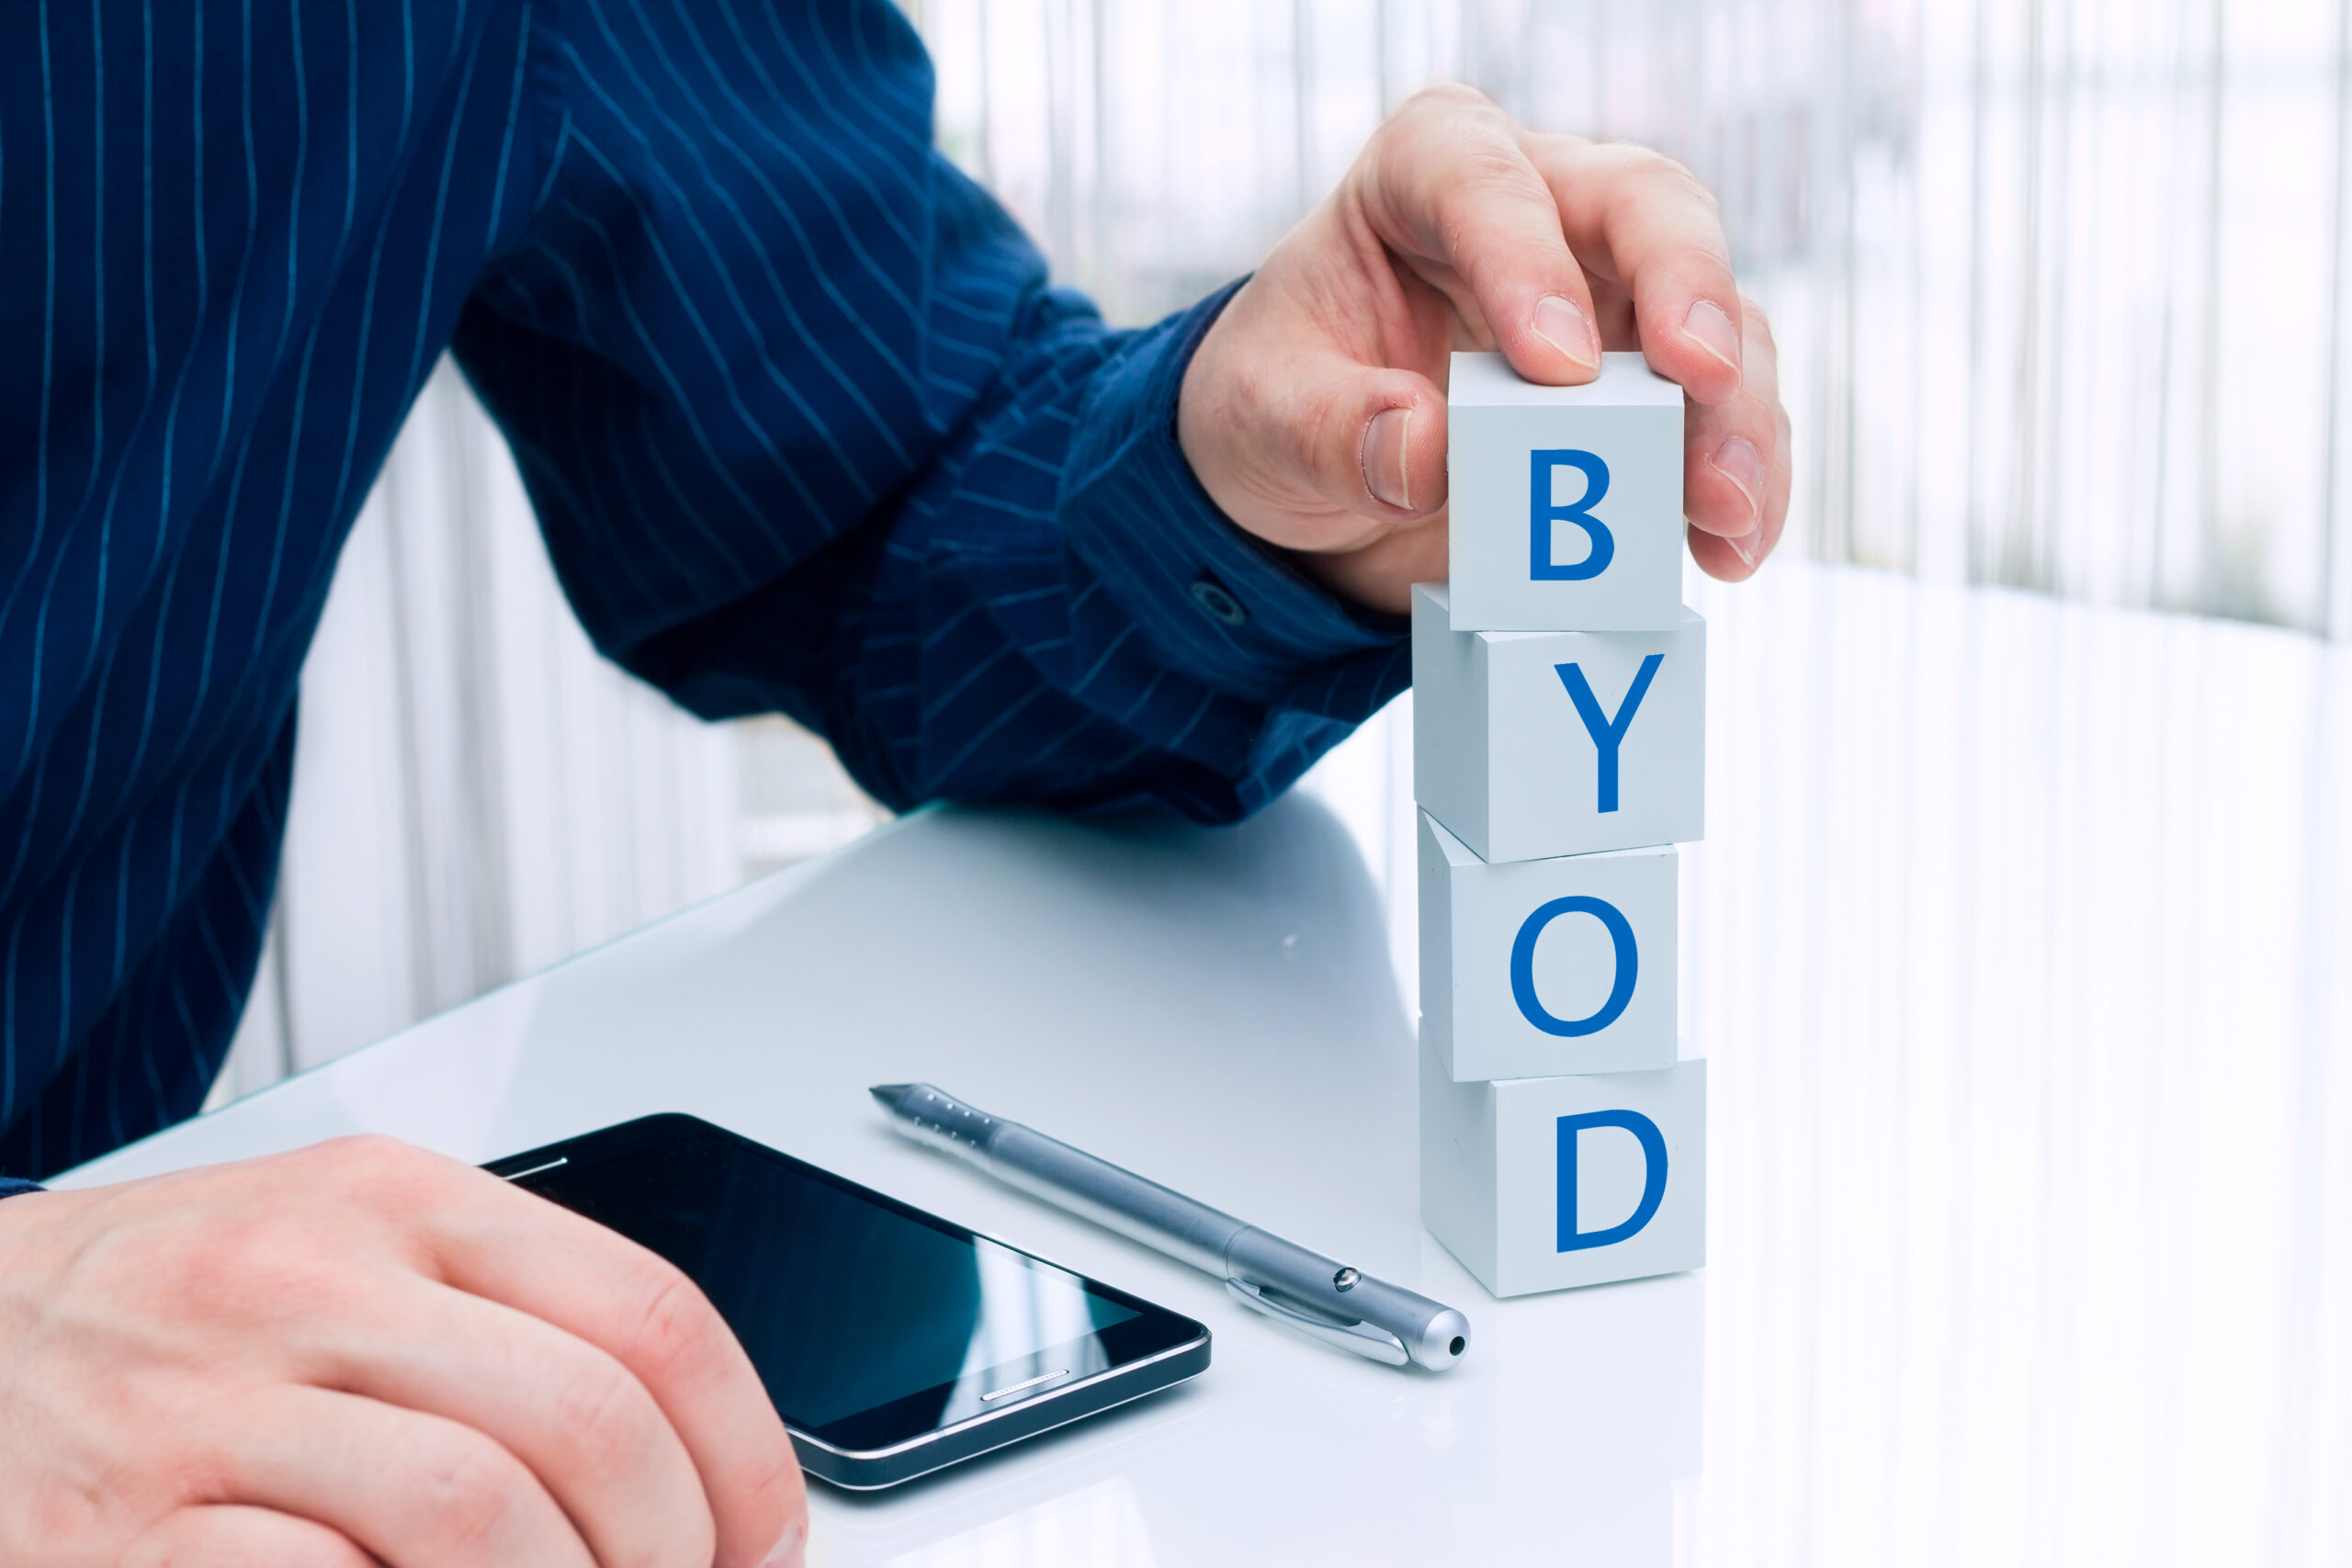 Ejecutivo recargado en un escritorio con un celular y colocando bloques con las iniciales BYOD revisando el top5 trends que definirán el futuro de los endpoint de aquí en adelante